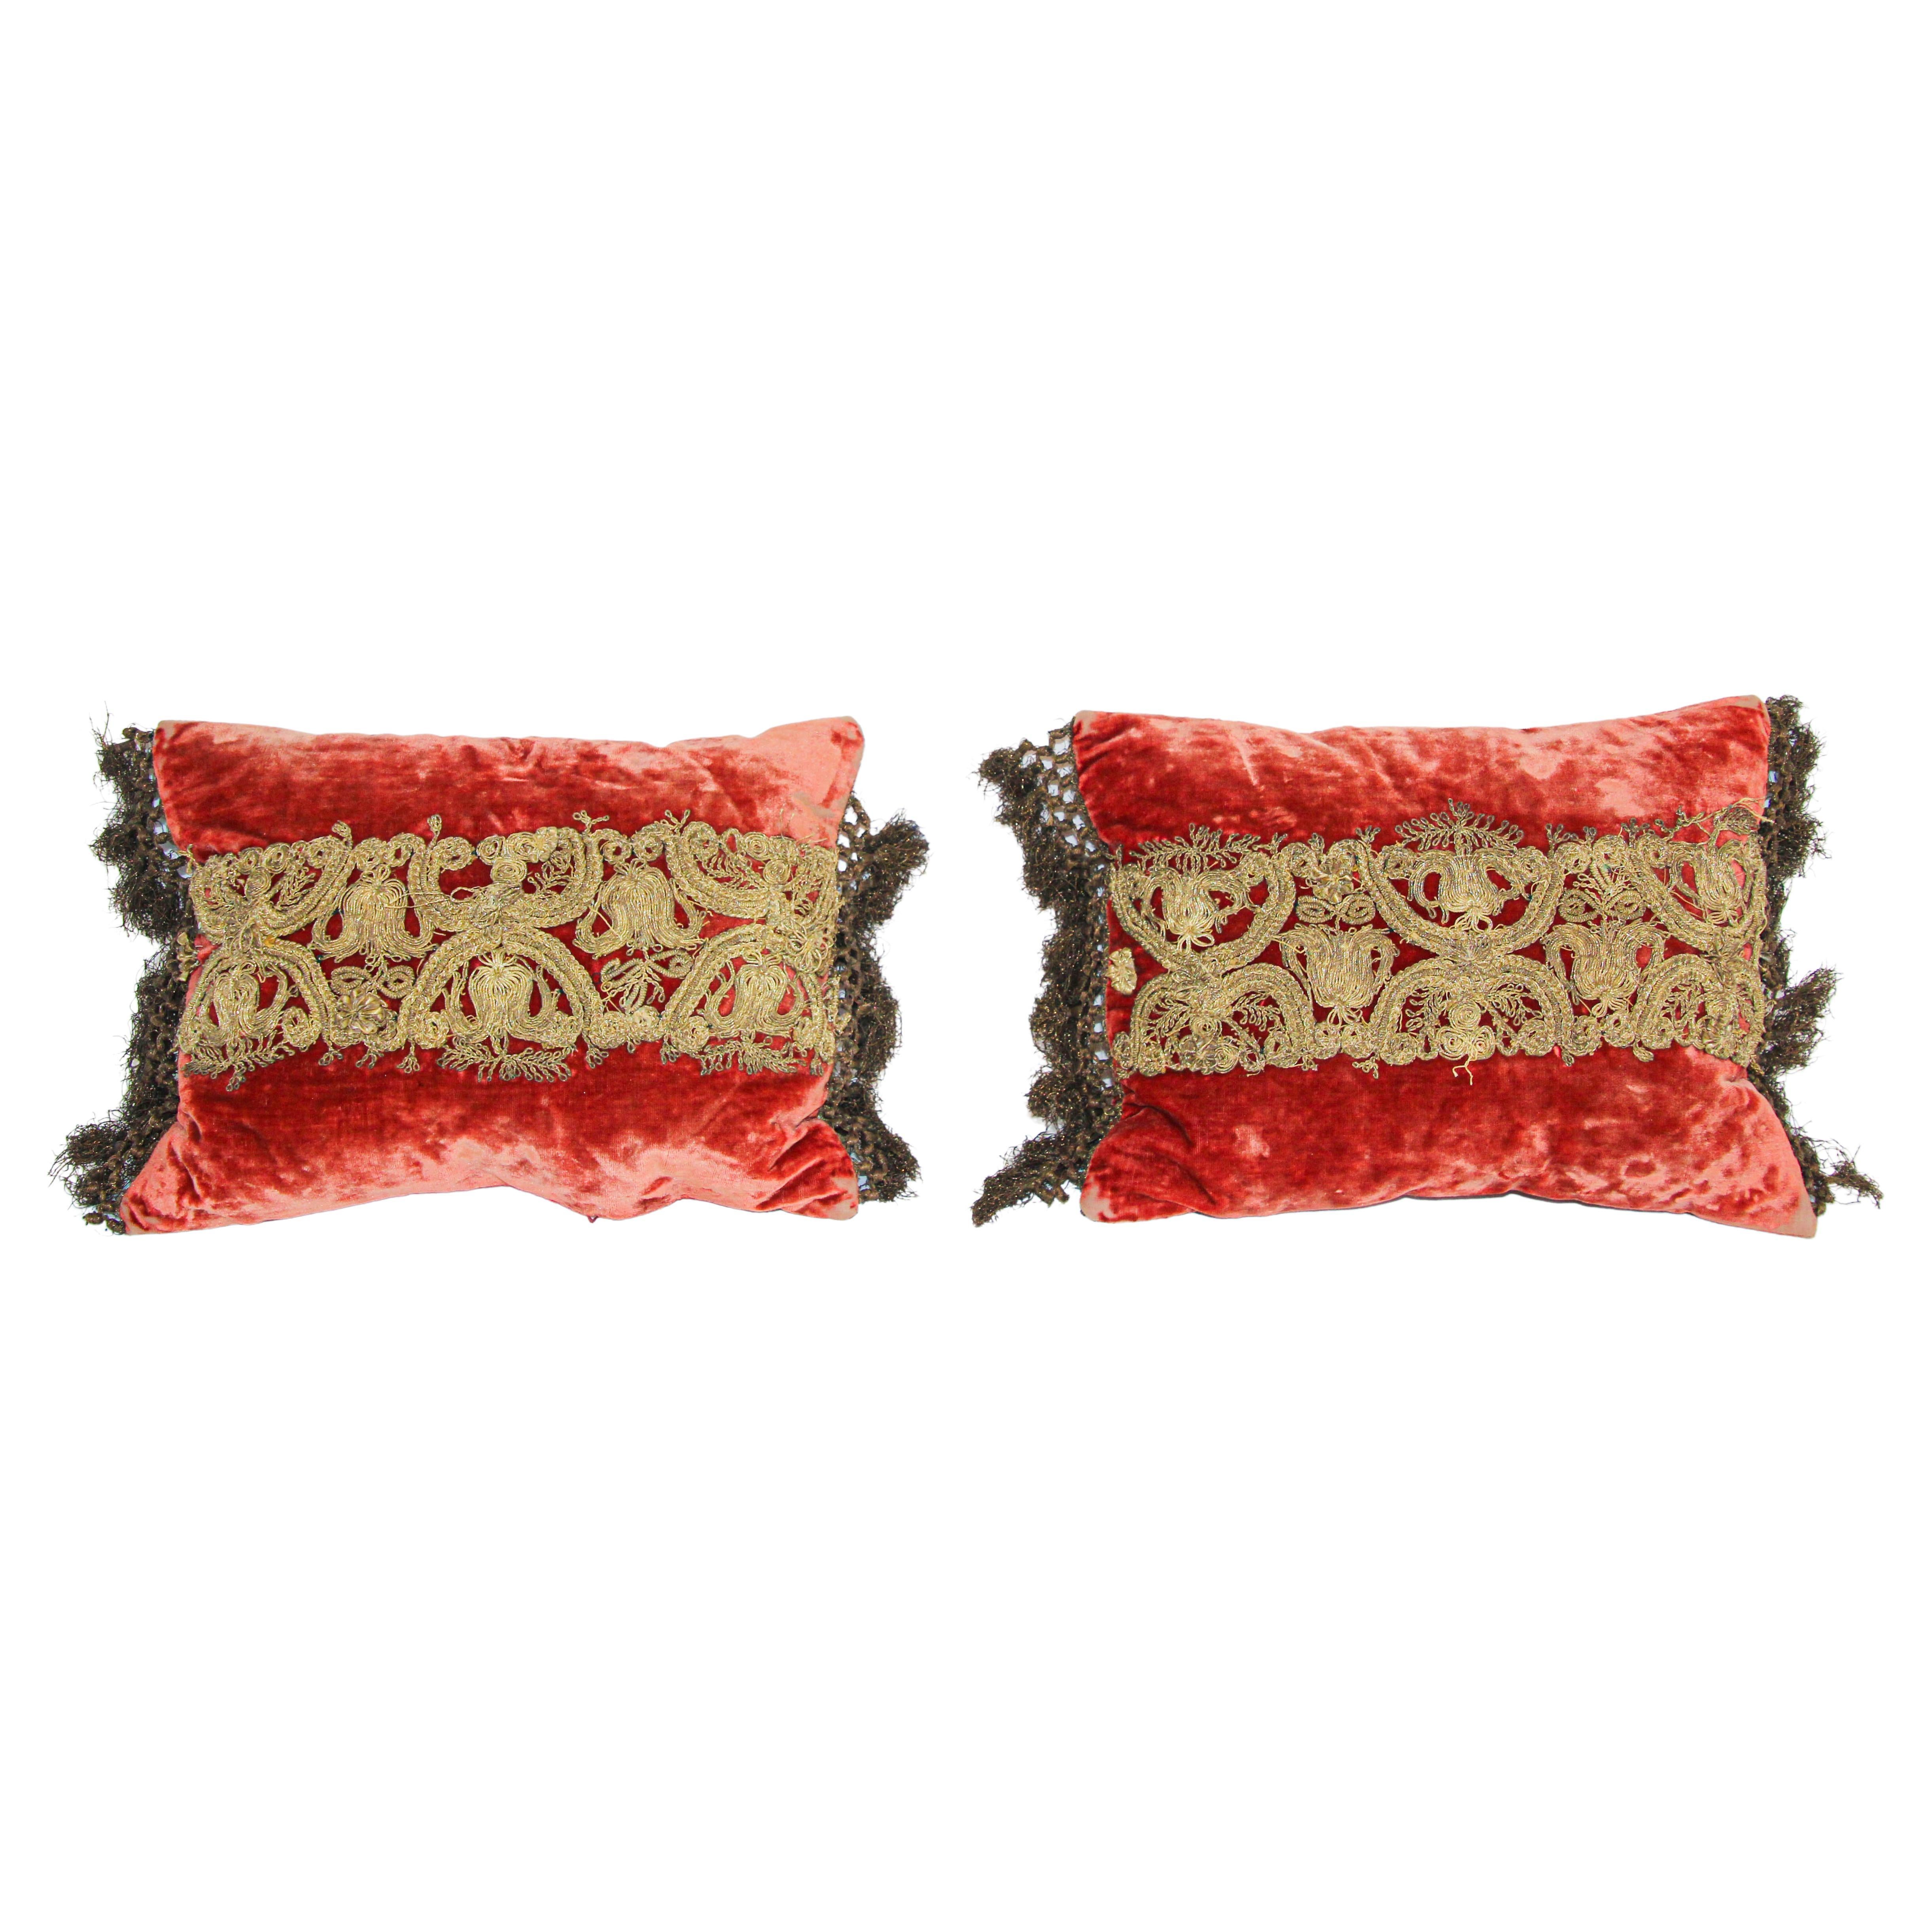 Coussins en velours de soie mauresque vénitien anciennement embelli de marches métalliques